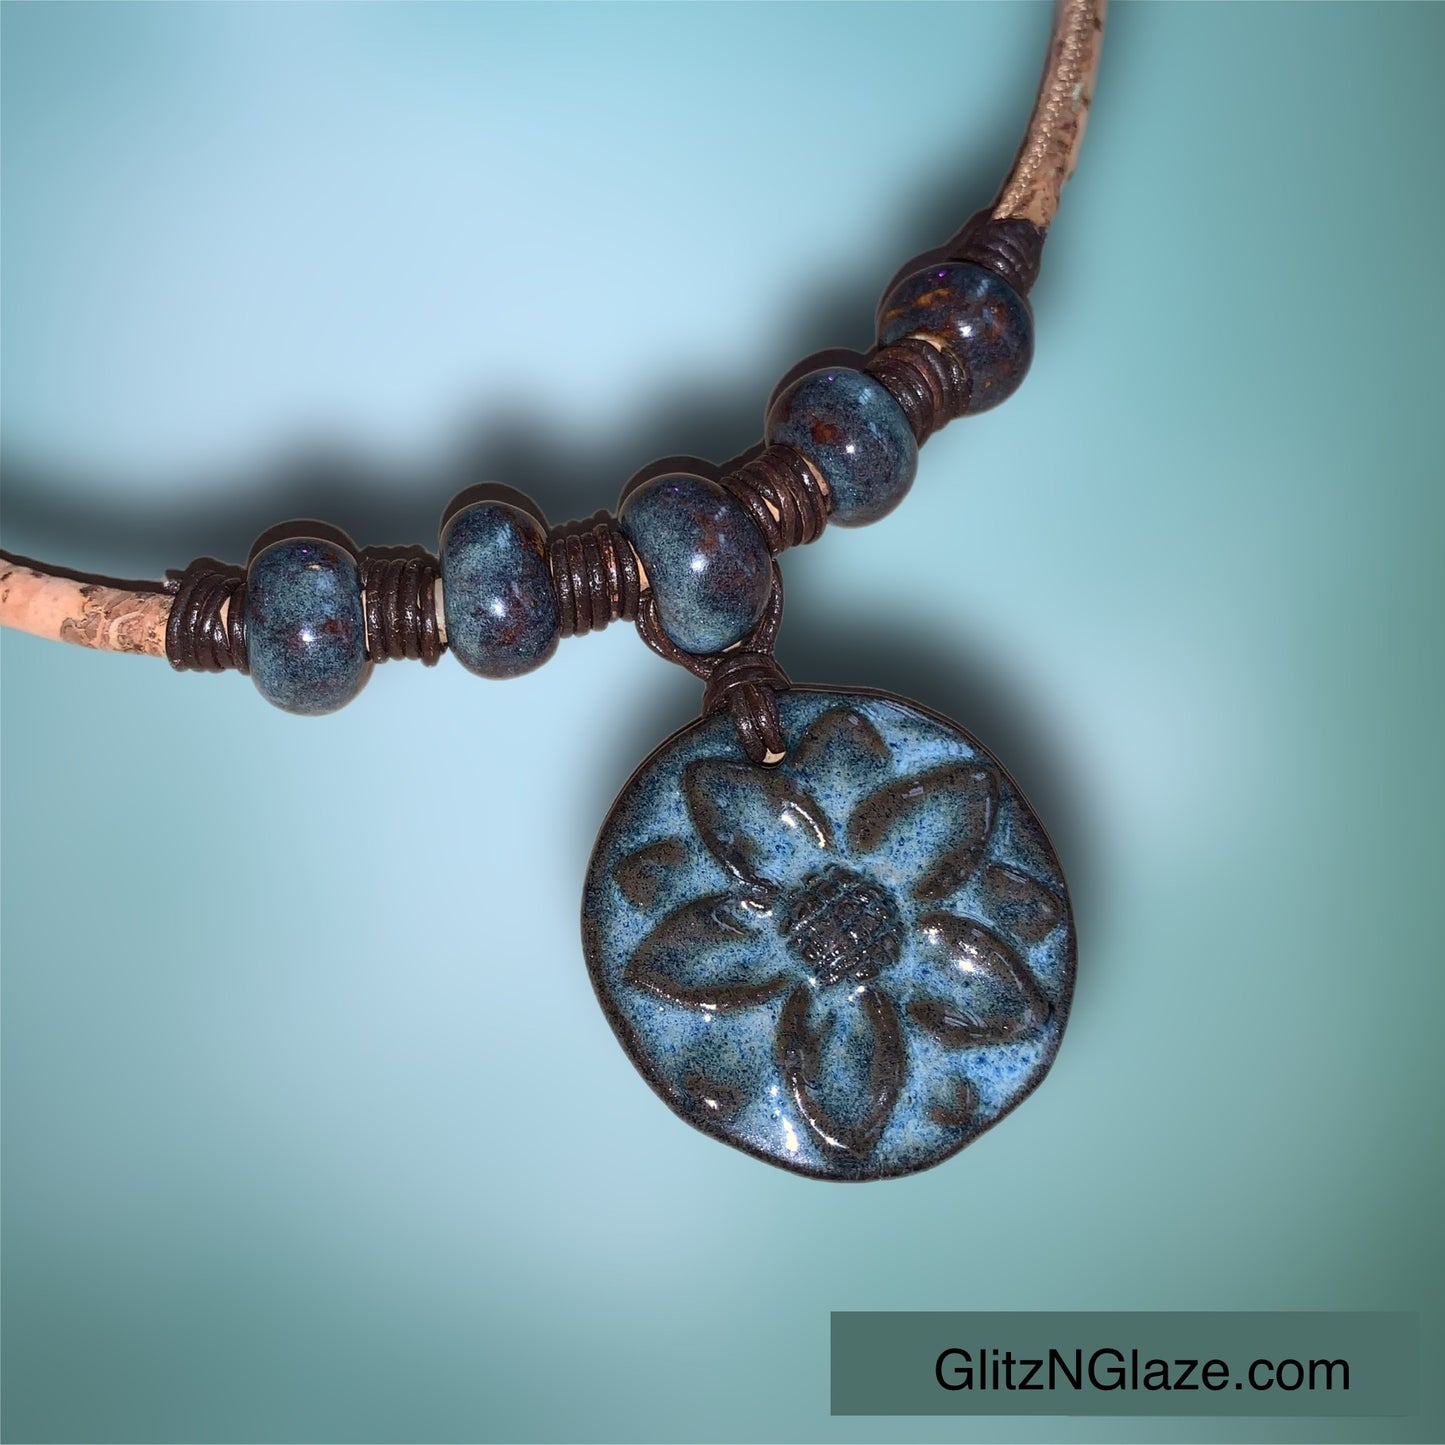 Denim Blue Flower Cork Necklace